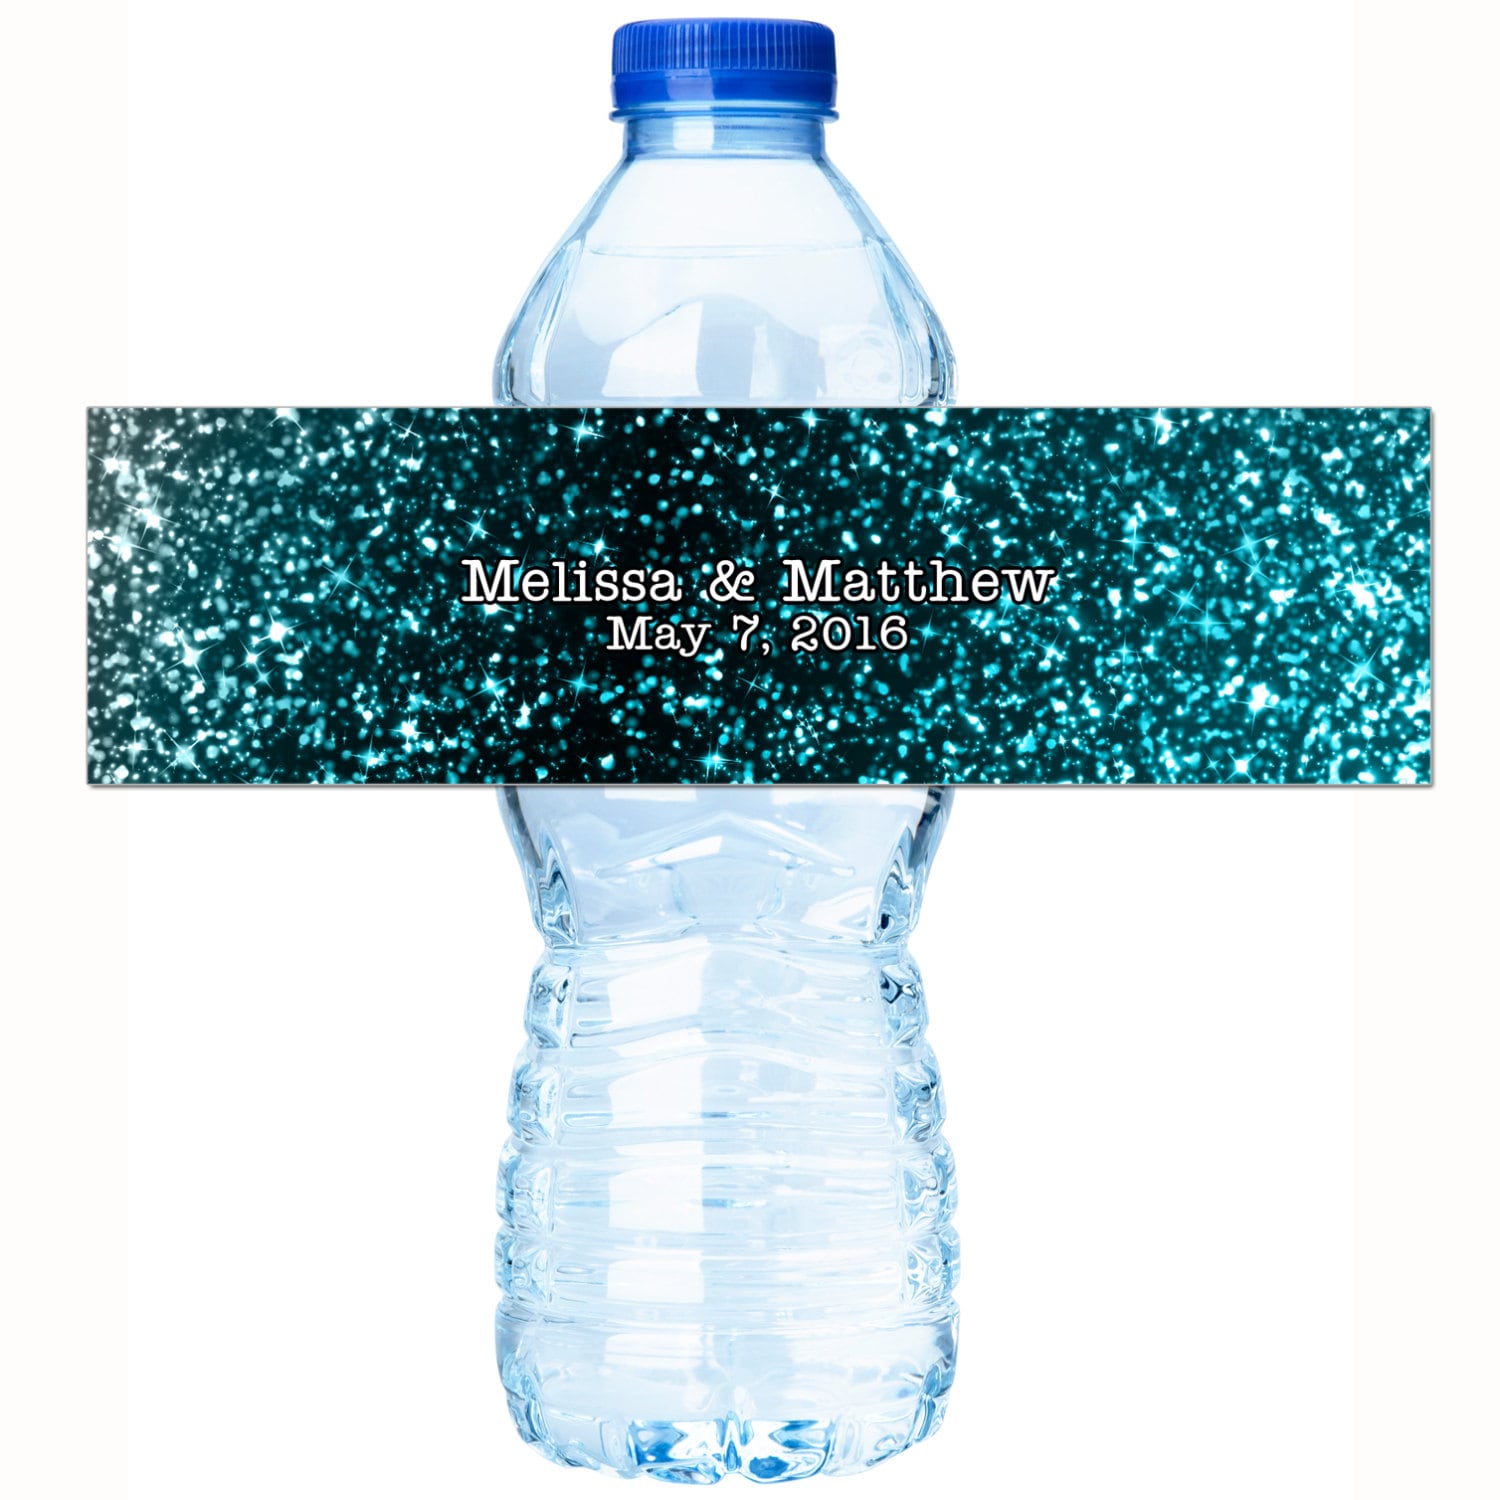 30 Personalized Custom Colored Waterproof Water Bottle Labels - Modern Blue Faux Glitter Look